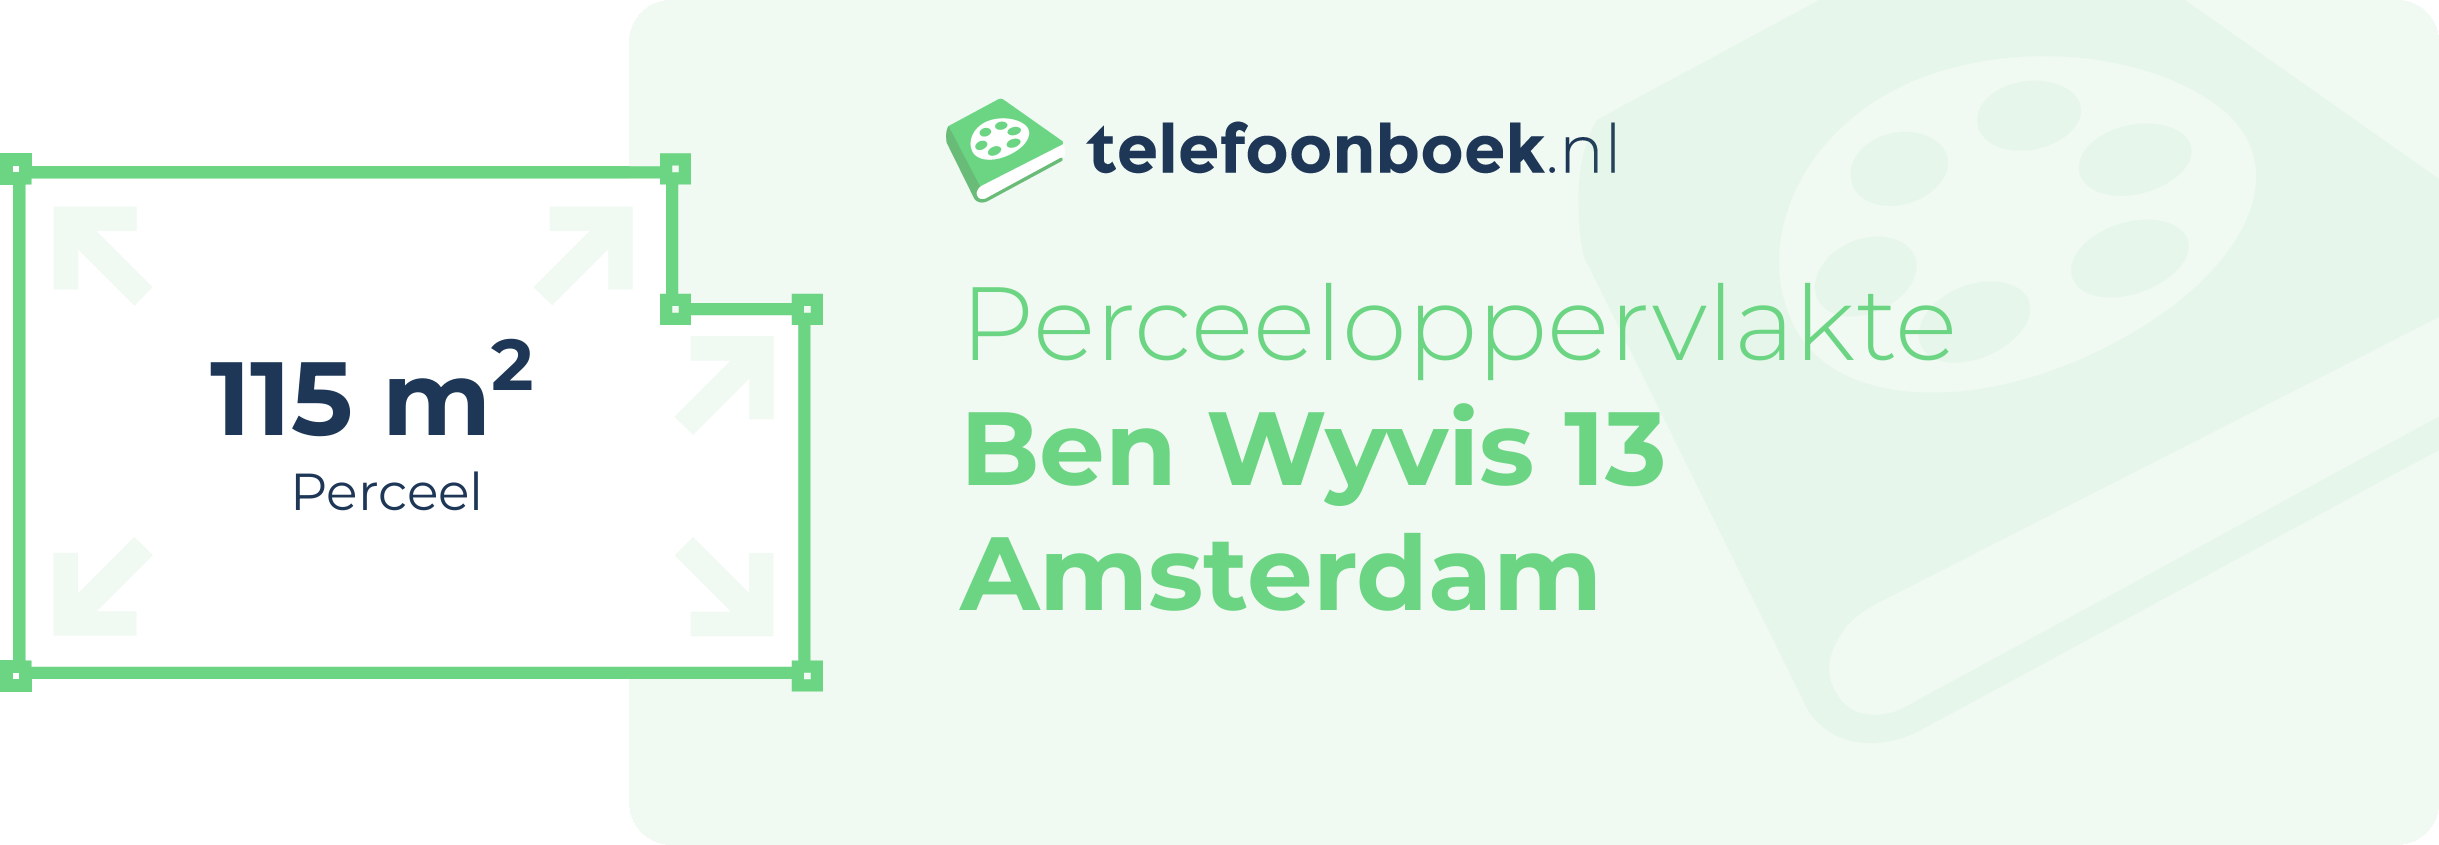 Perceeloppervlakte Ben Wyvis 13 Amsterdam